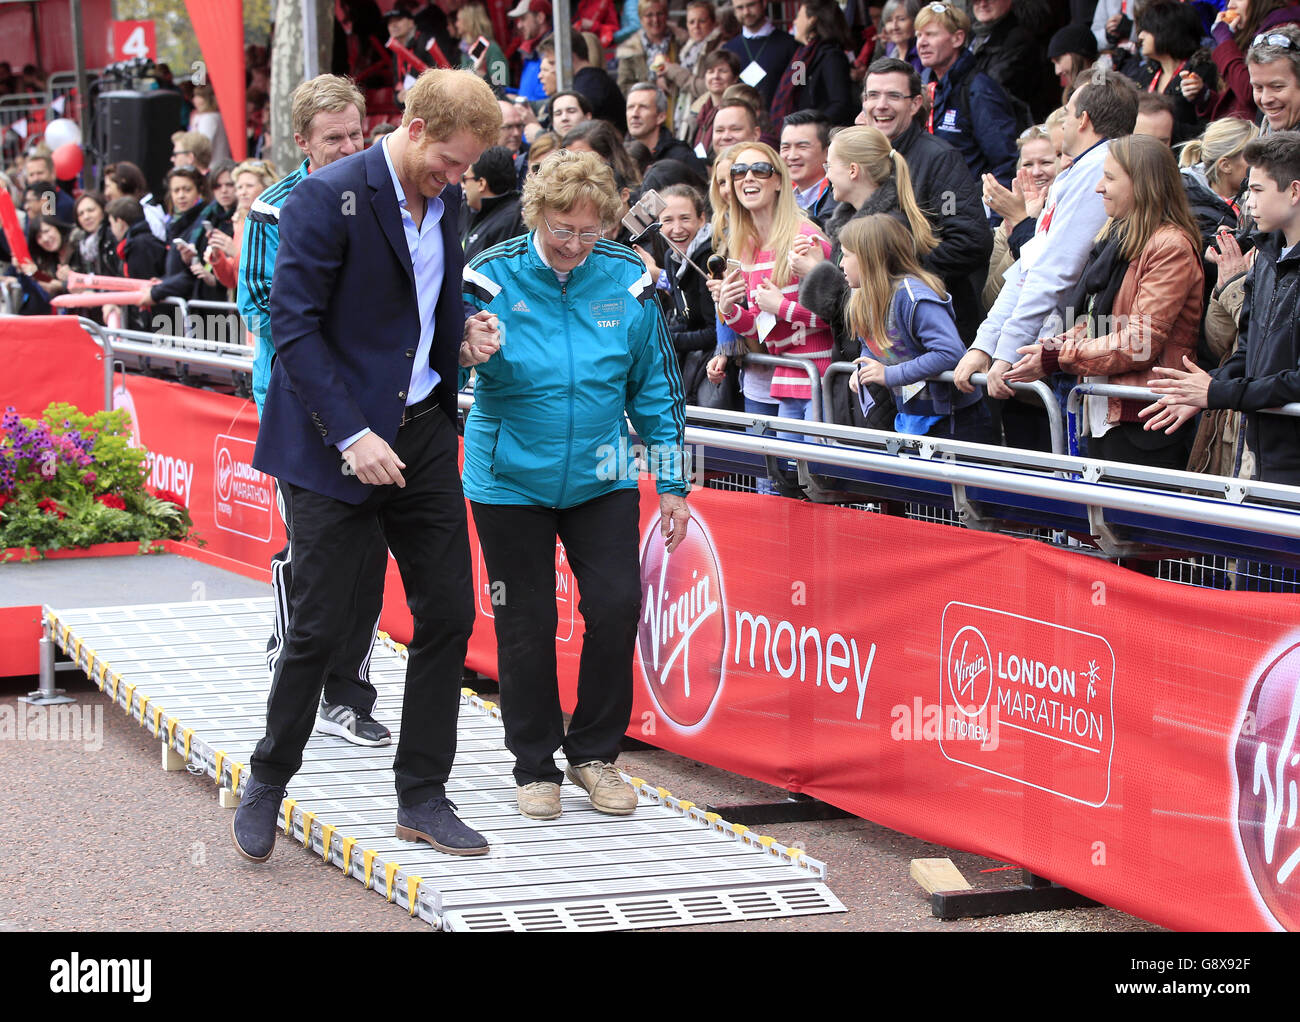 Le Prince Harry escorte la veuve du fondateur du London Marathon John Disley du podium lors du Virgin Money London Marathon de 2016. Banque D'Images